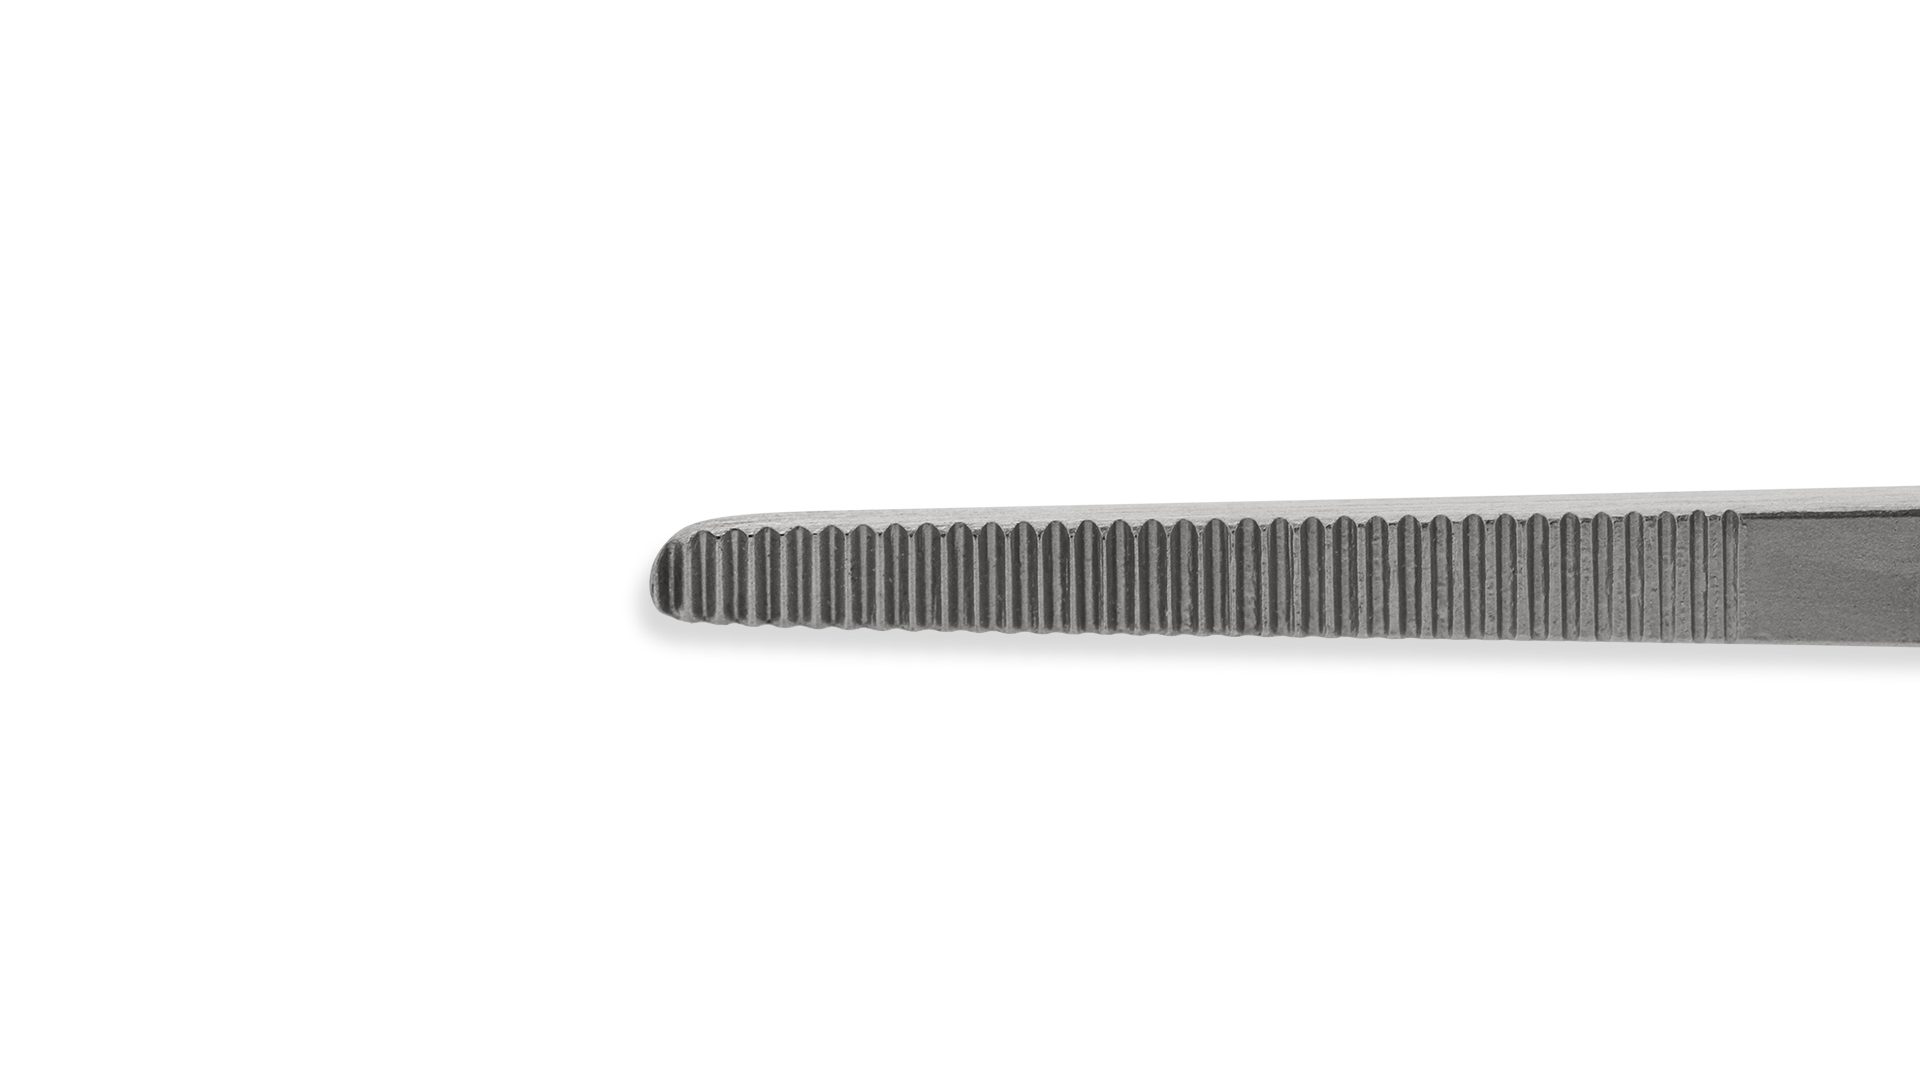 McIndoe Forceps - Straight 1mm serrated tips